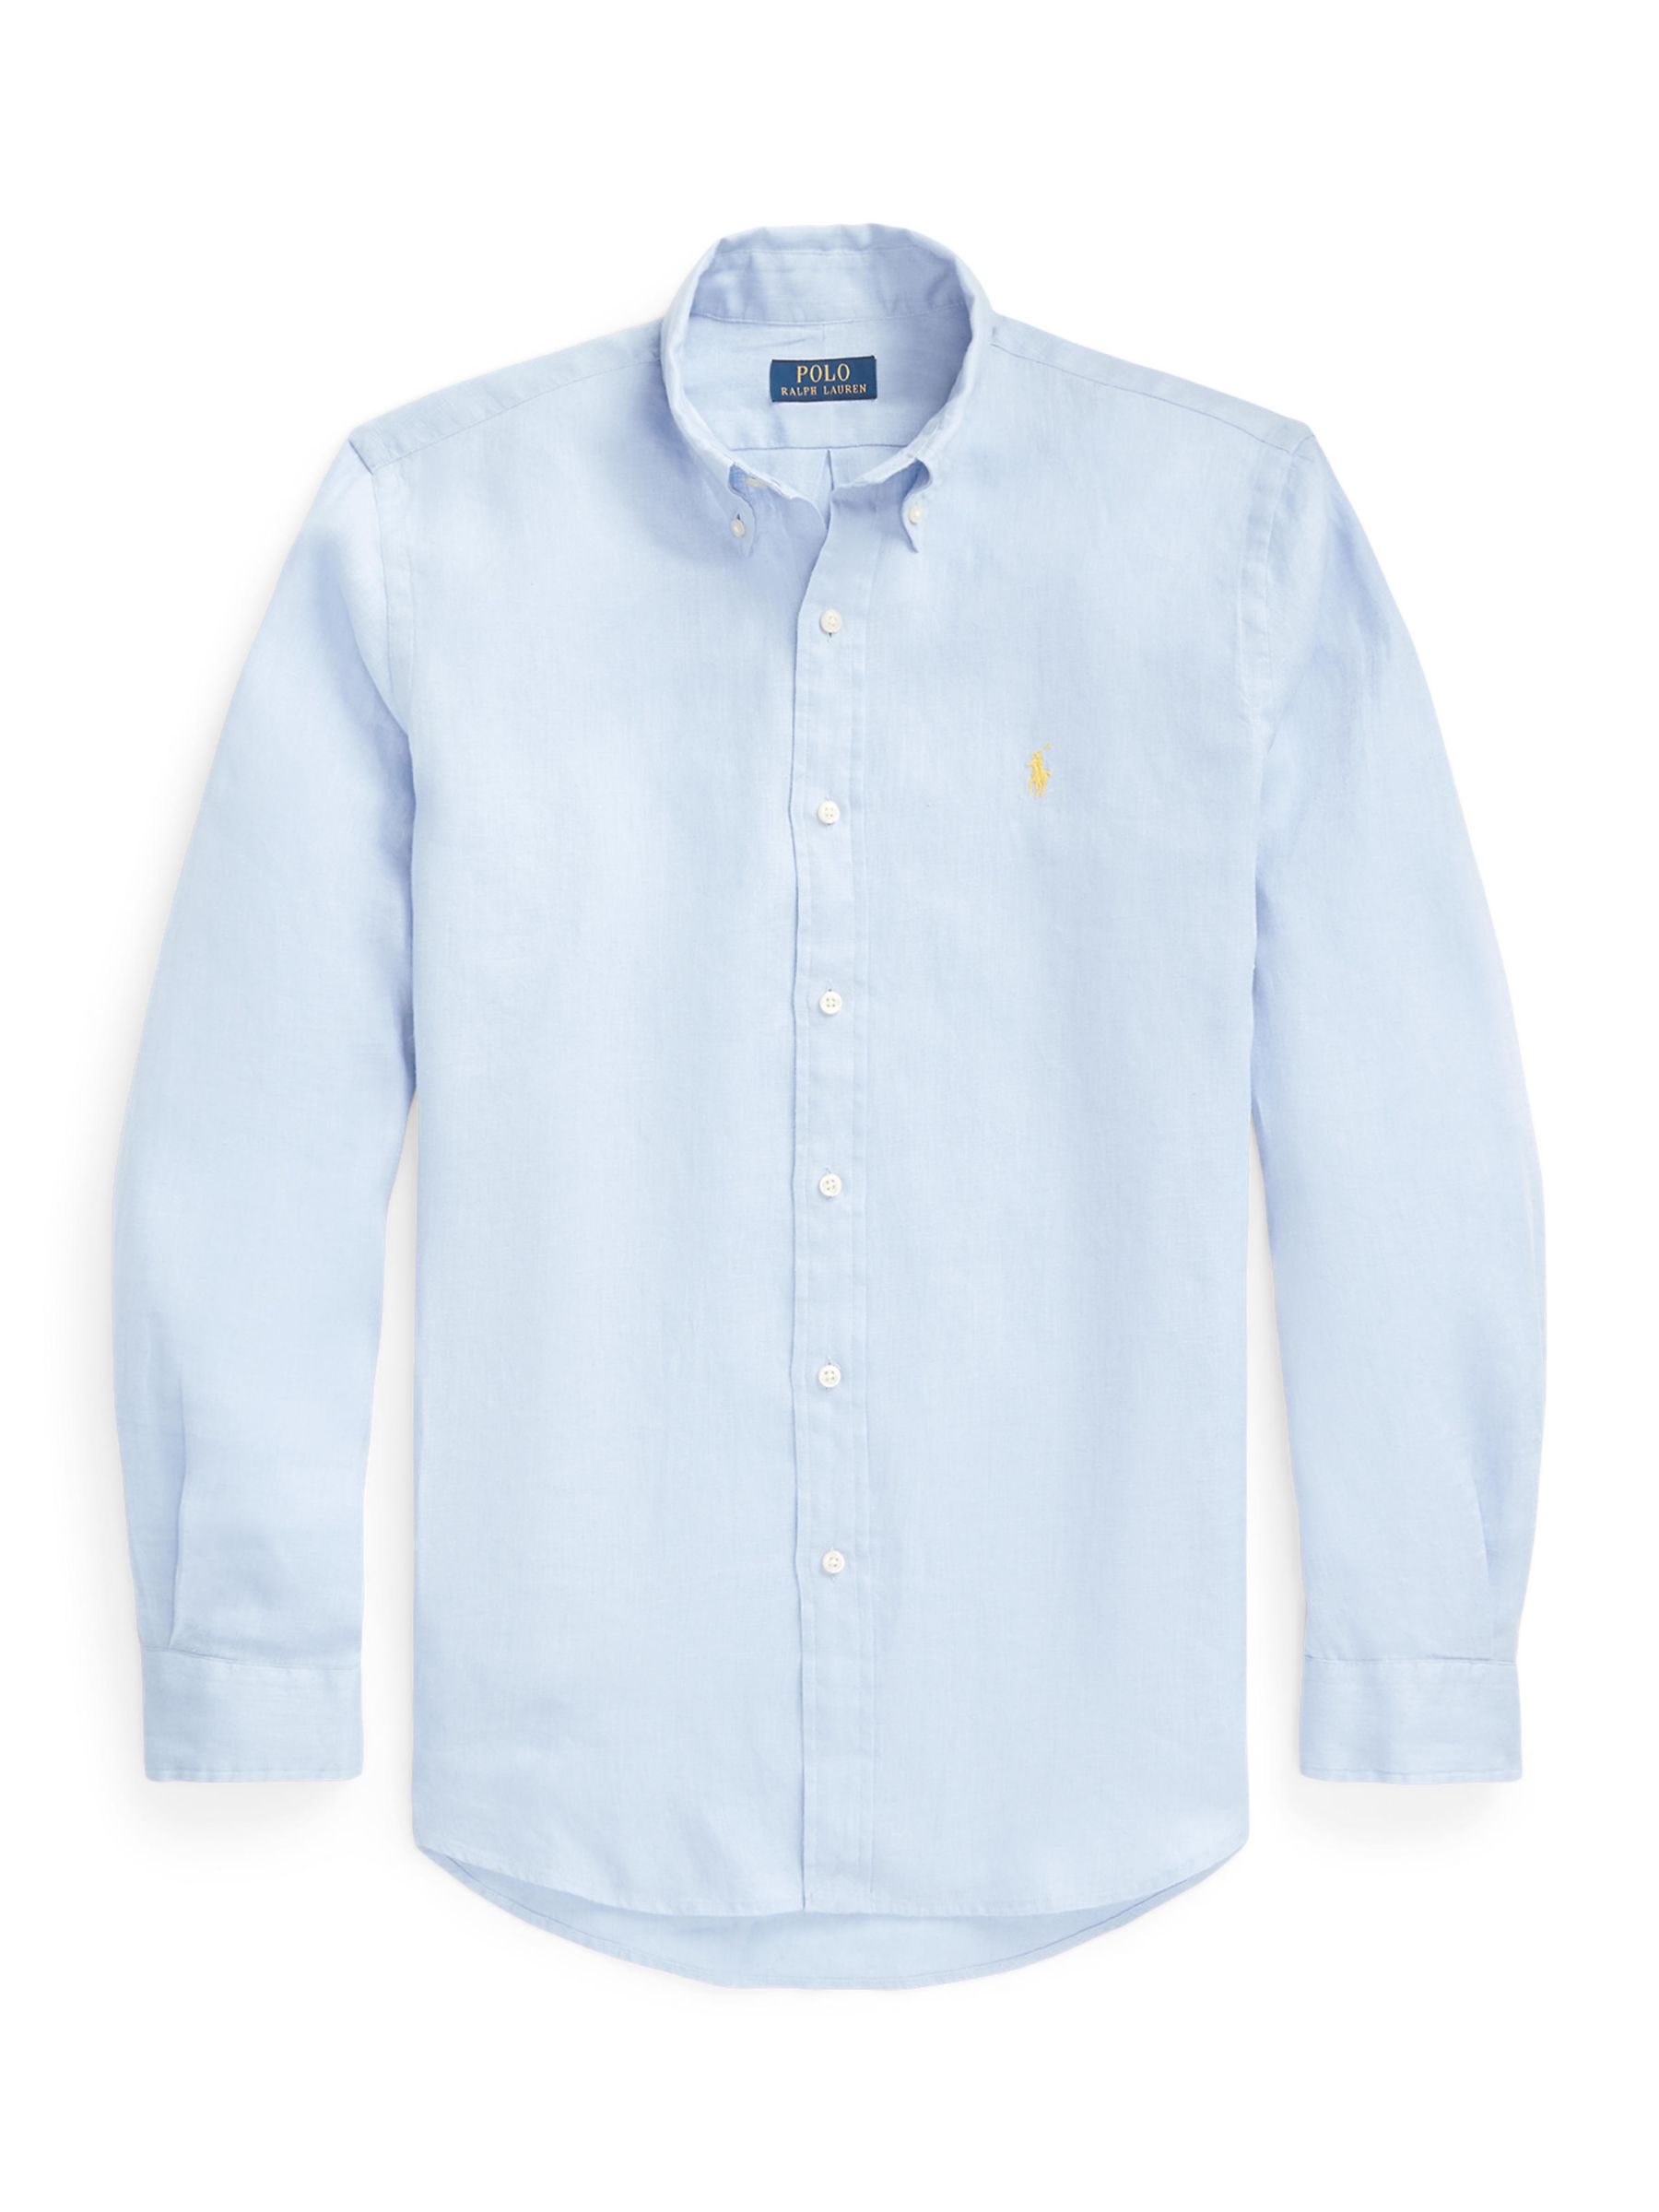 Polo Ralph Lauren Linen Shirt, Blue Hyacinth, L